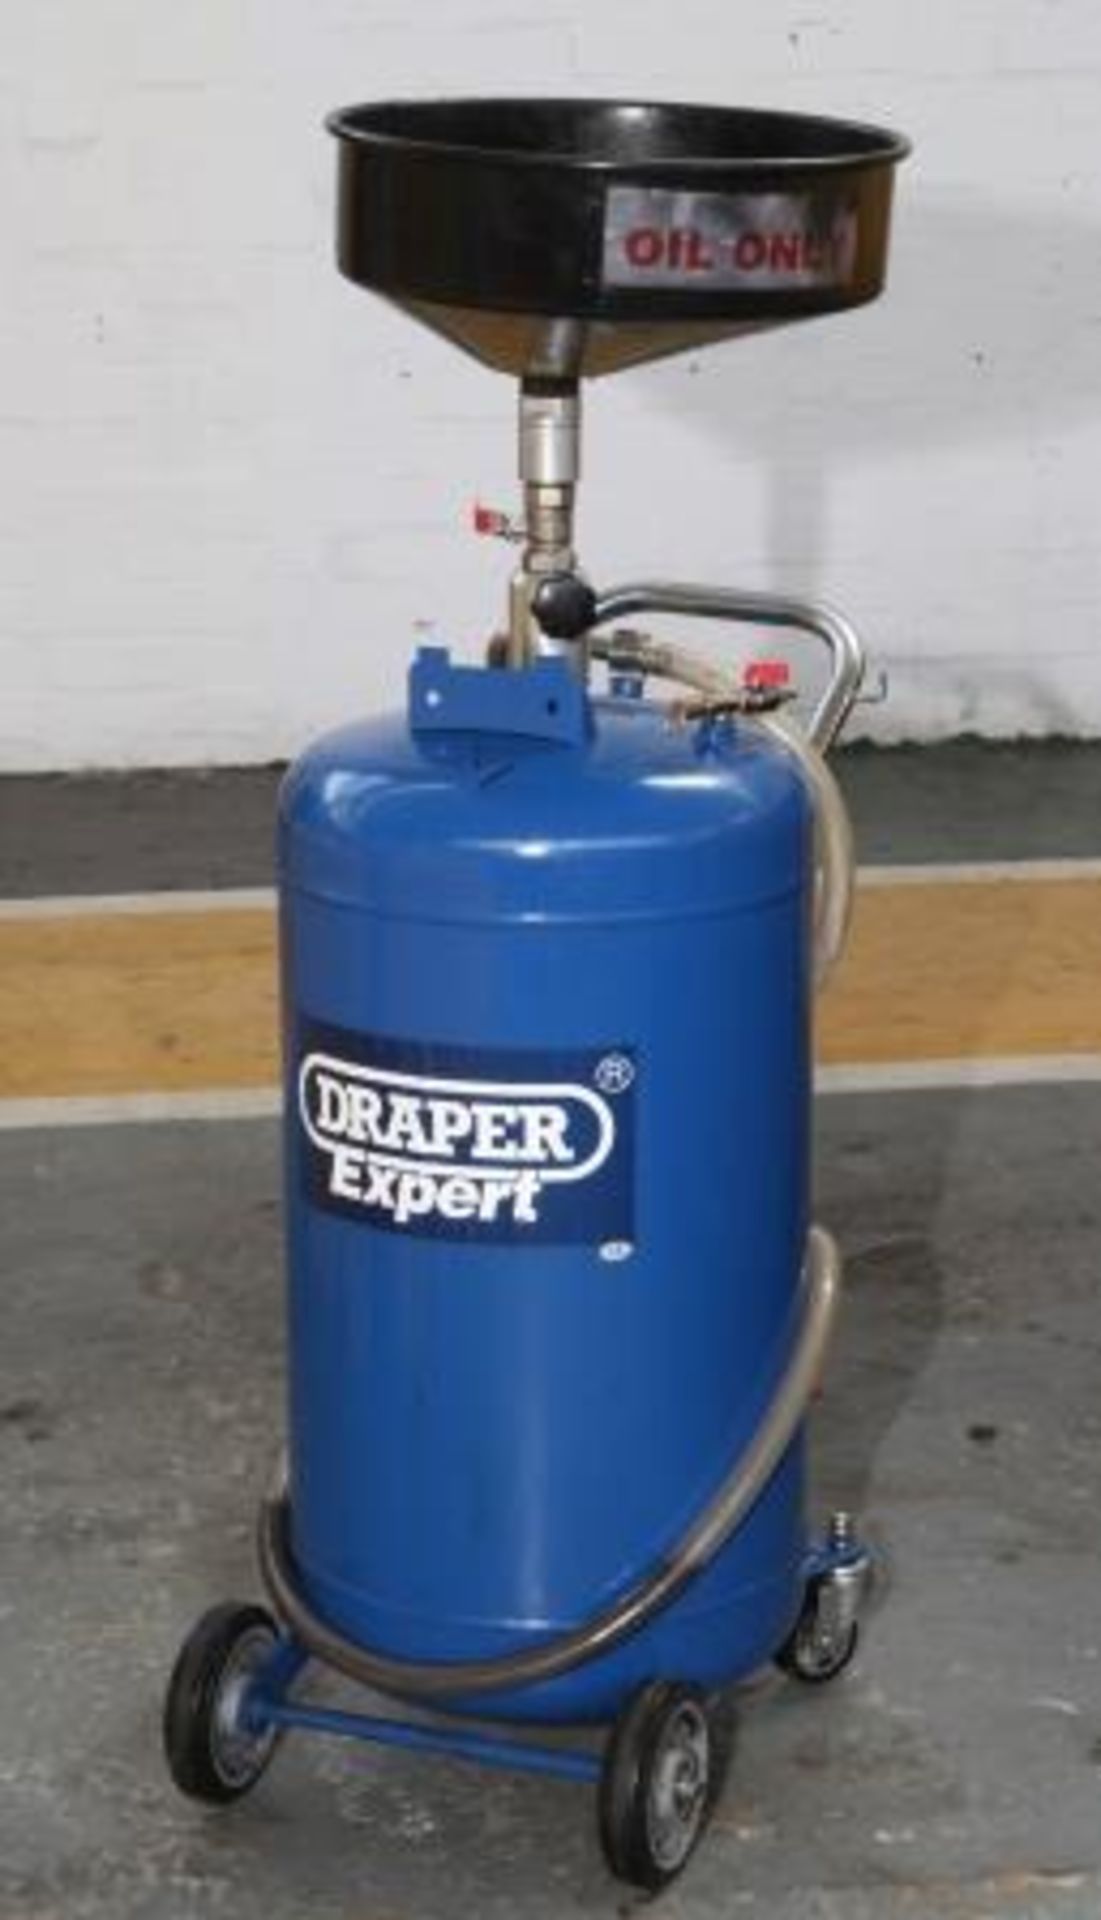 Draper Expert 90 Litre Oil Drainer